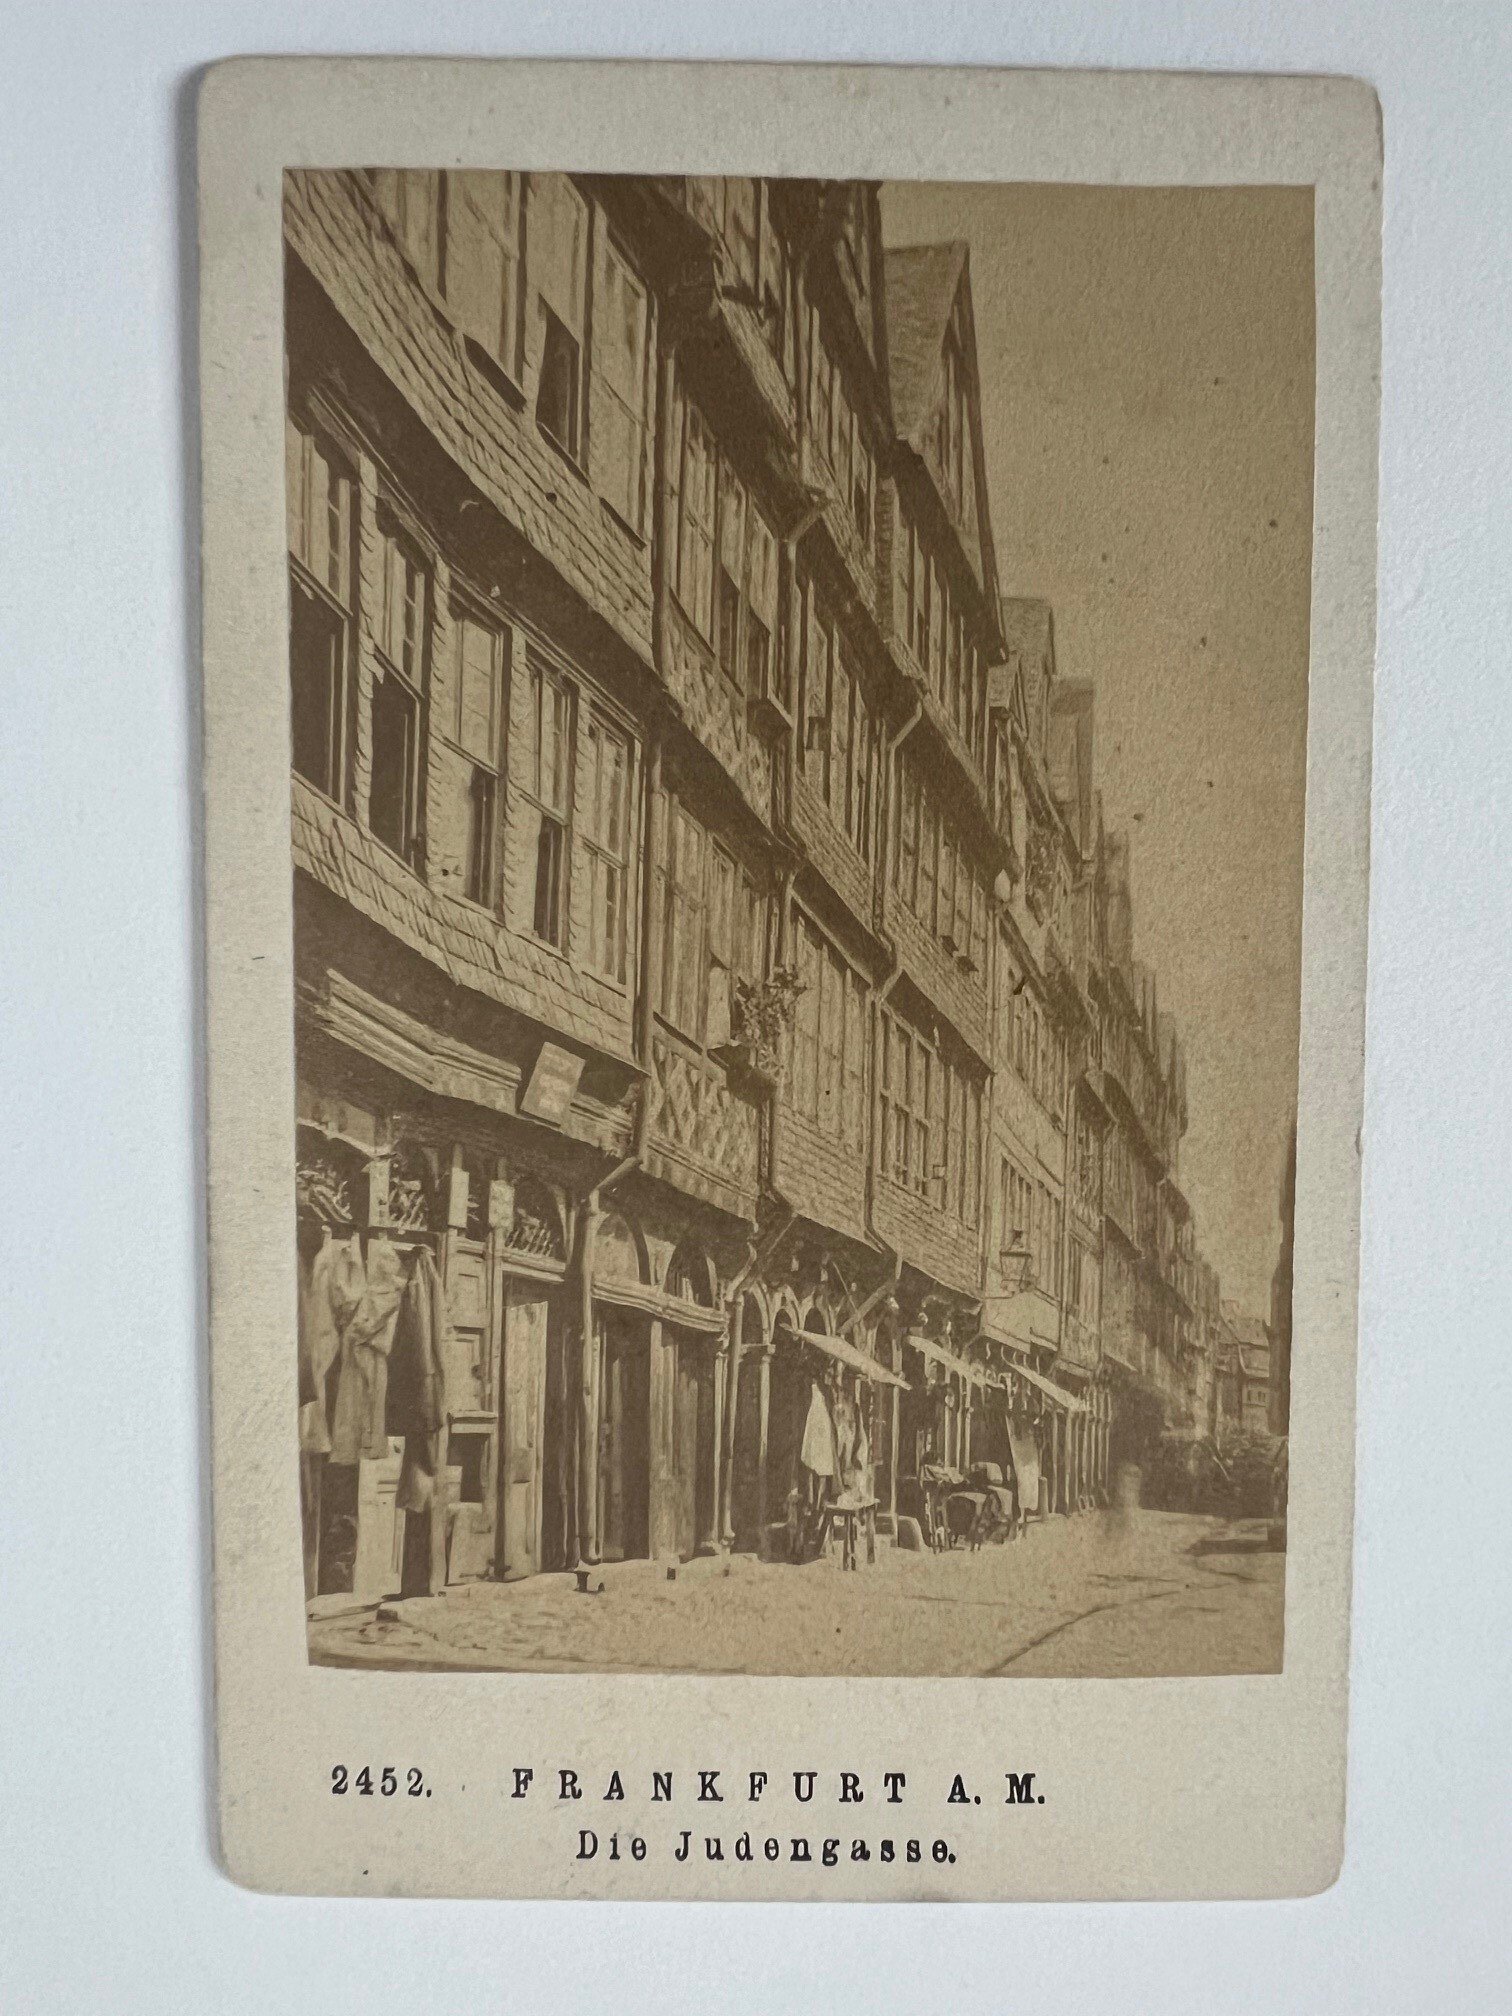 CdV, Unbekannter Fotograf, Frankfurt, Die Judengasse, ca. 1876. (Taunus-Rhein-Main - Regionalgeschichtliche Sammlung Dr. Stefan Naas CC BY-NC-SA)